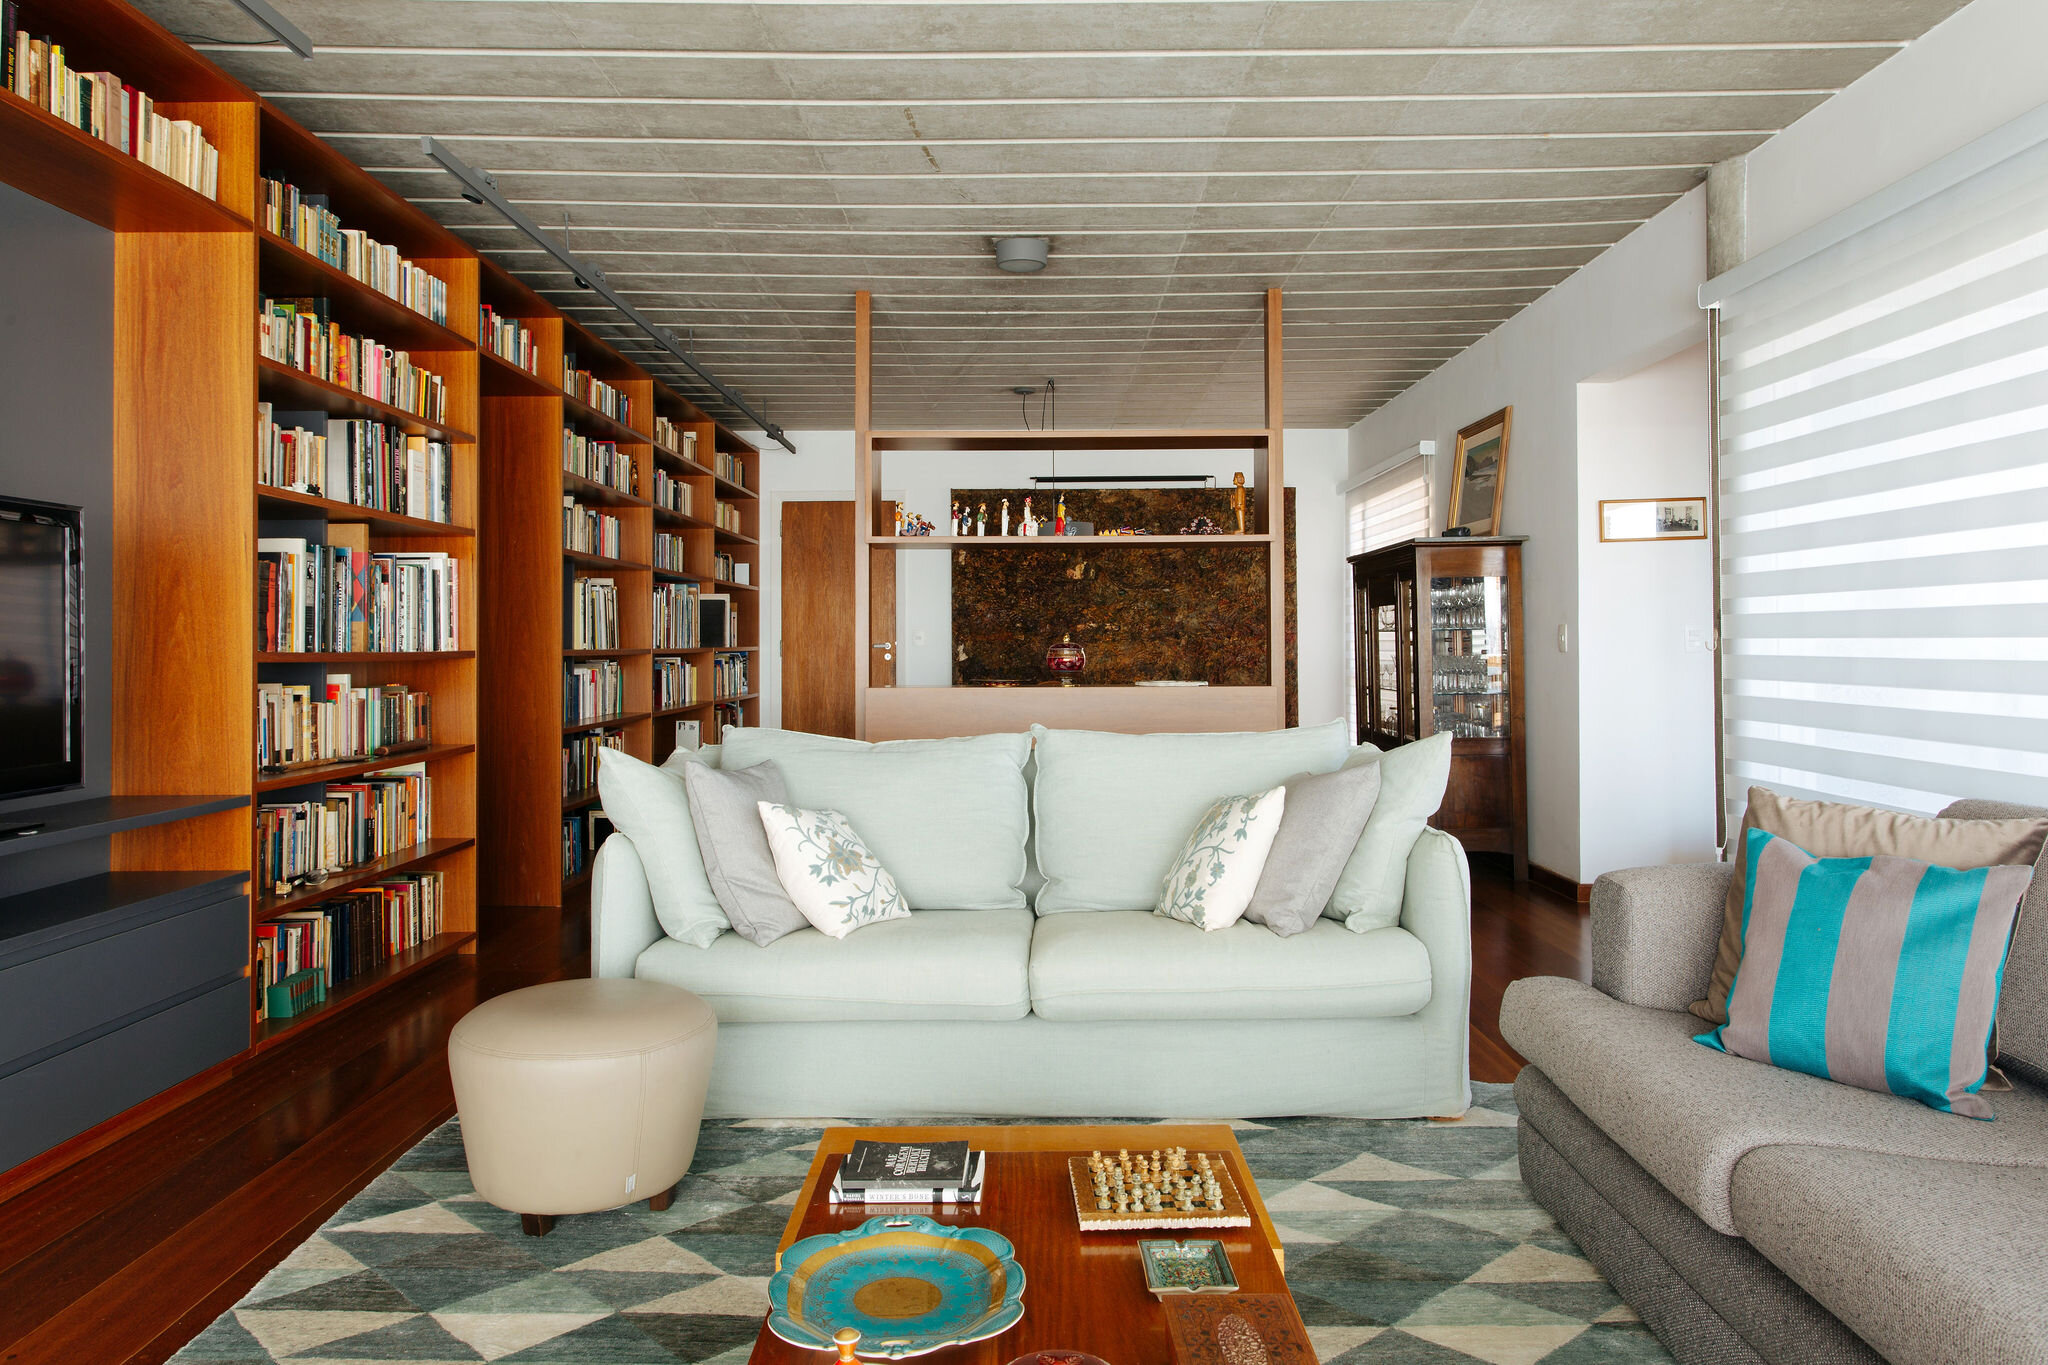 apartamento-reforma-sala-parede-livros-teto-concreto-aparente-sofa-branco.jpg